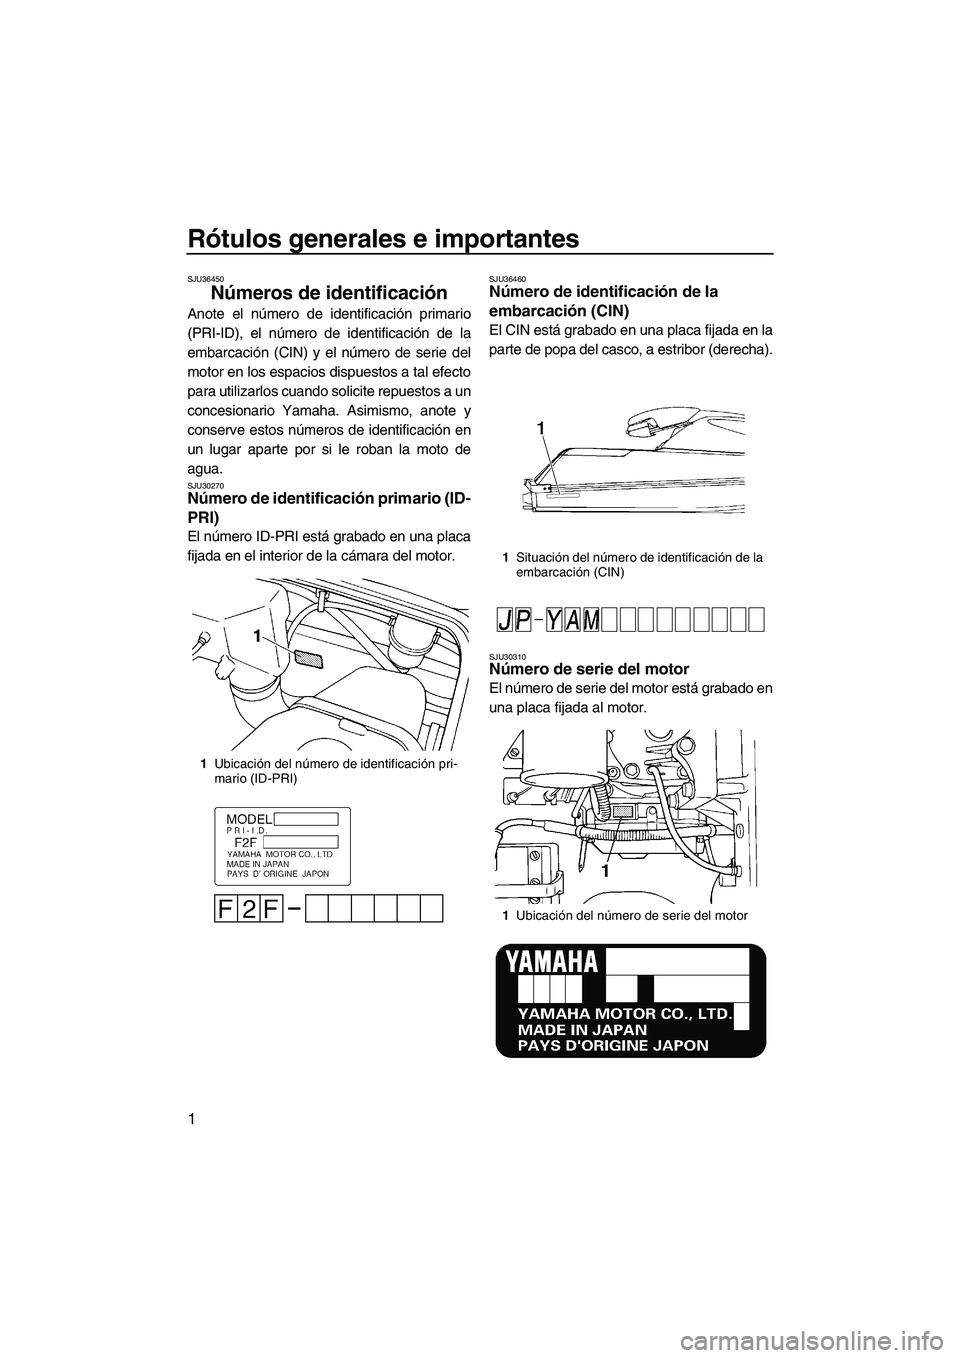 YAMAHA SUPERJET 2008  Manuale de Empleo (in Spanish) Rótulos generales e importantes
1
SJU36450
Números de identificación 
Anote el número de identificación primario
(PRI-ID), el número de identificación de la
embarcación (CIN) y el número de s